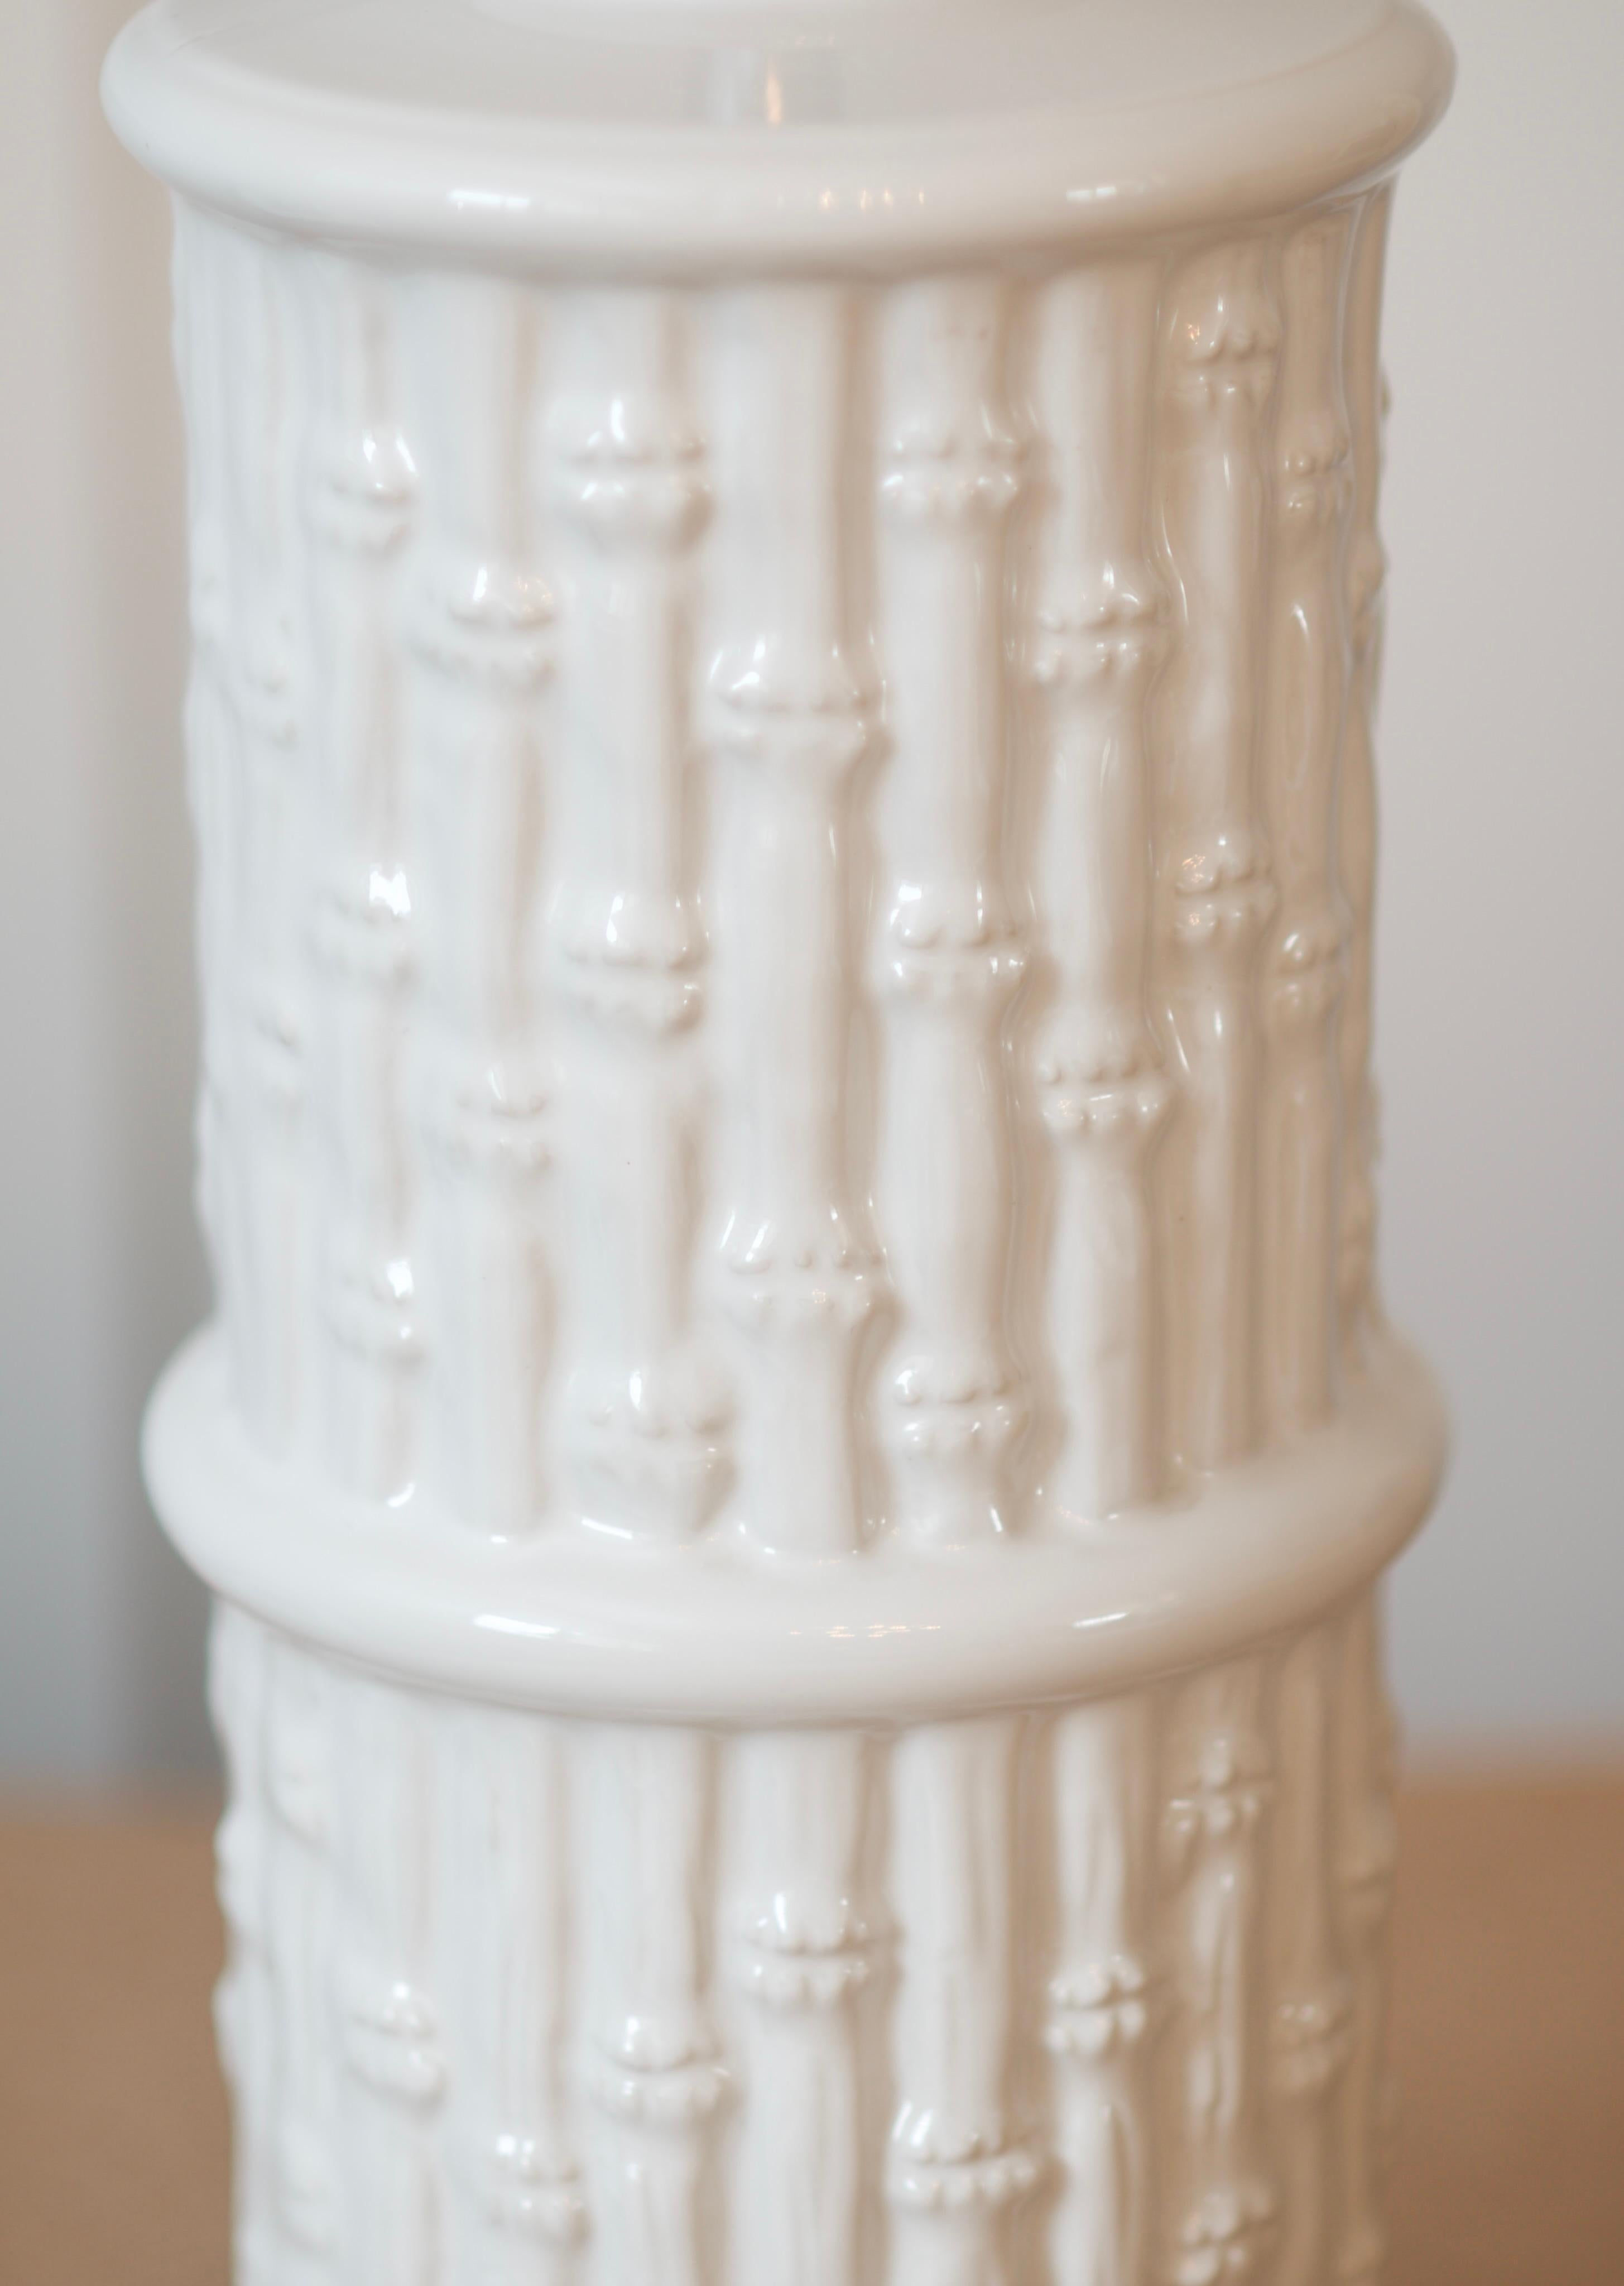 Lampe Vintage Mid-Century Modern en céramique blanche en faux bambou, circa 1960.

Jolie lampe classique en faux bambou blanc. Raccords chromés. Simple et élégant.  La teinte blanche peut s'accorder avec une myriade de nuances.  Dimensions 